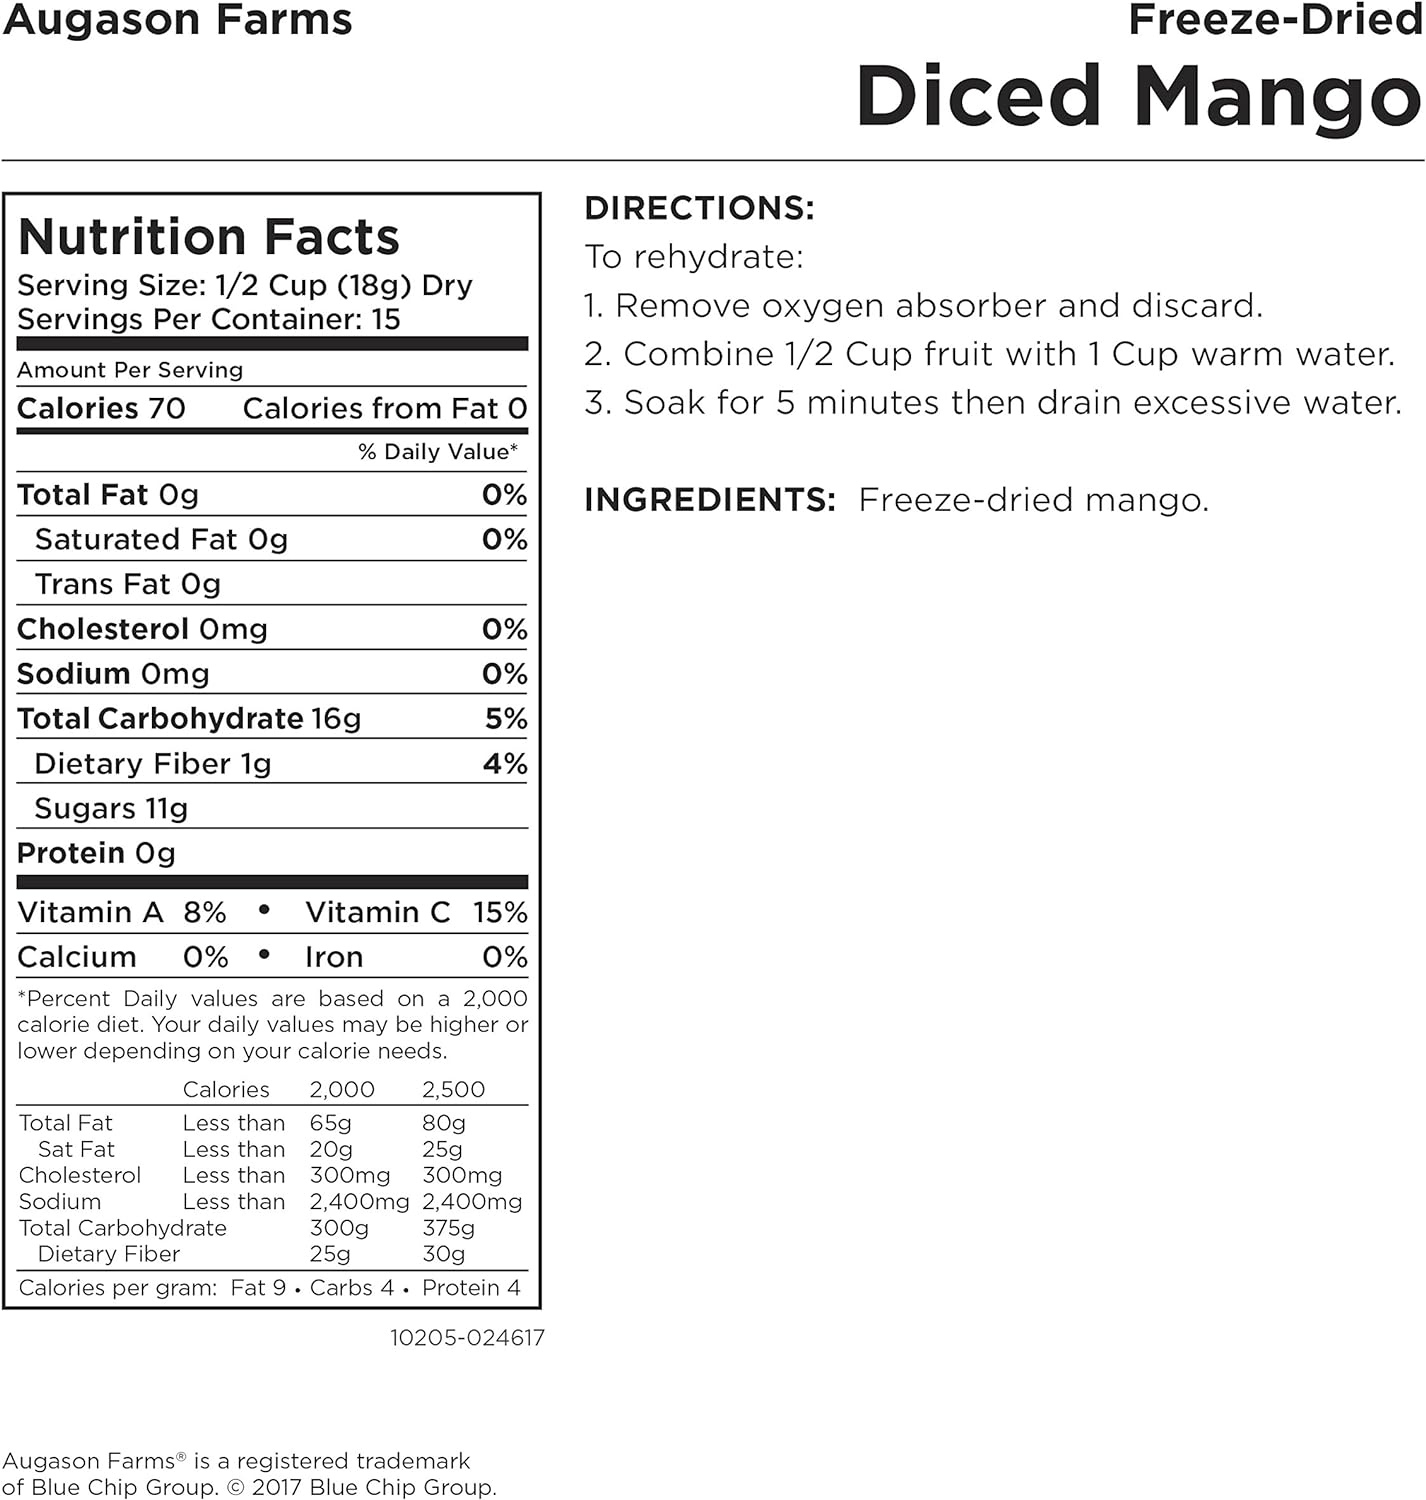 Augason Farms Freeze Dried Diced Mango 9.52 oz No. 10 Can